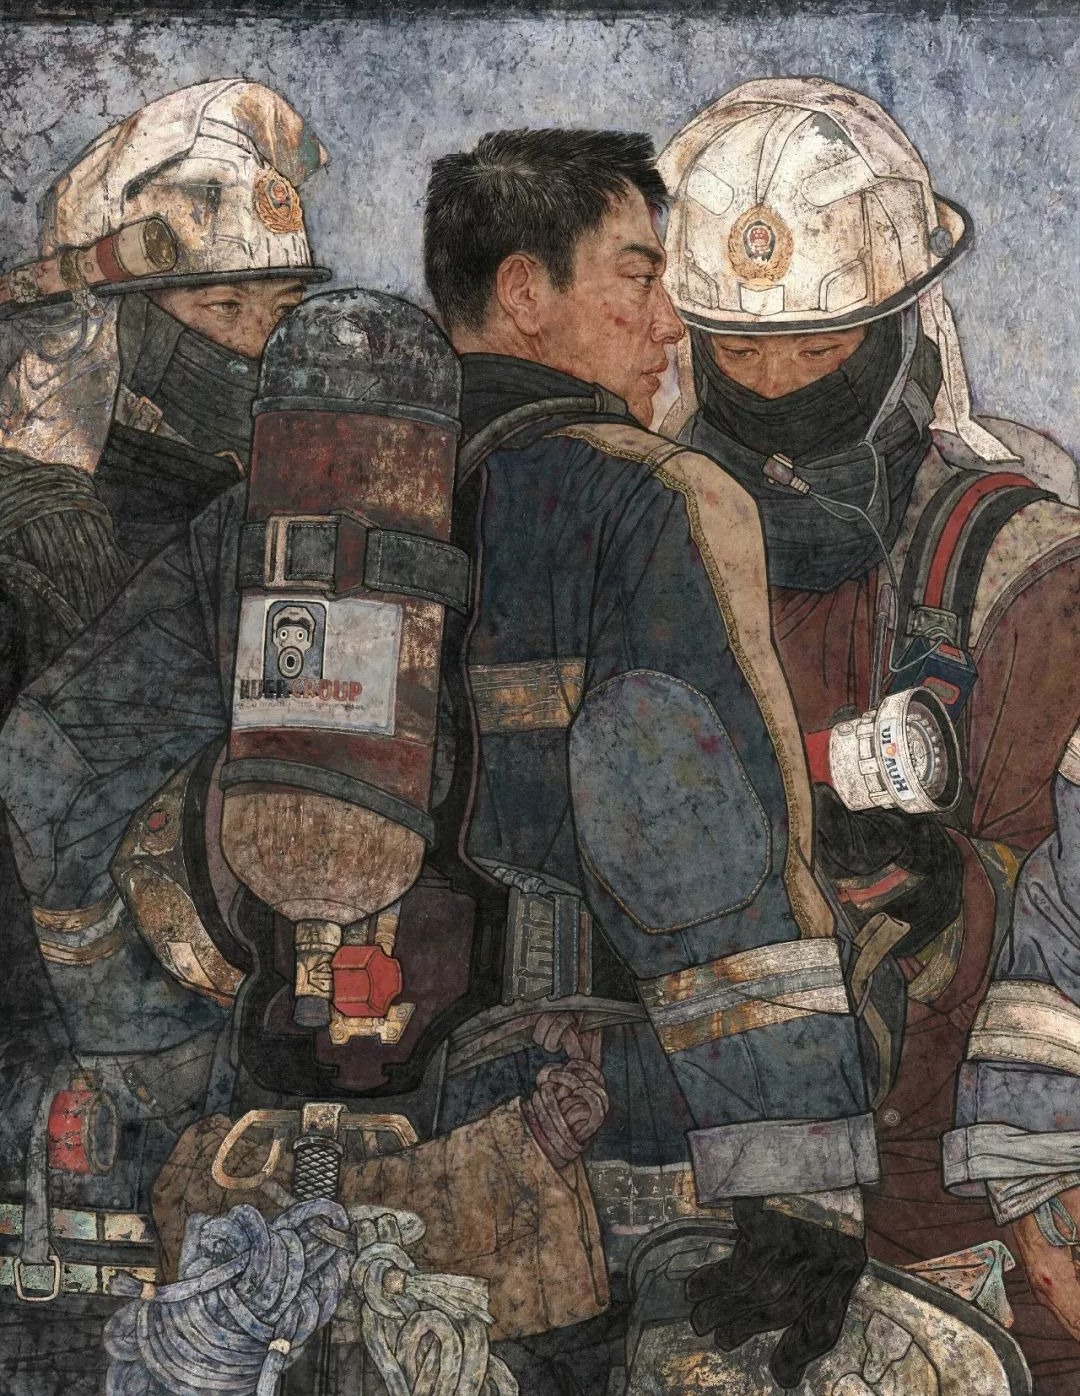 市青年画家李玉旺作品《使命》获第十三届美展画唯一金奖